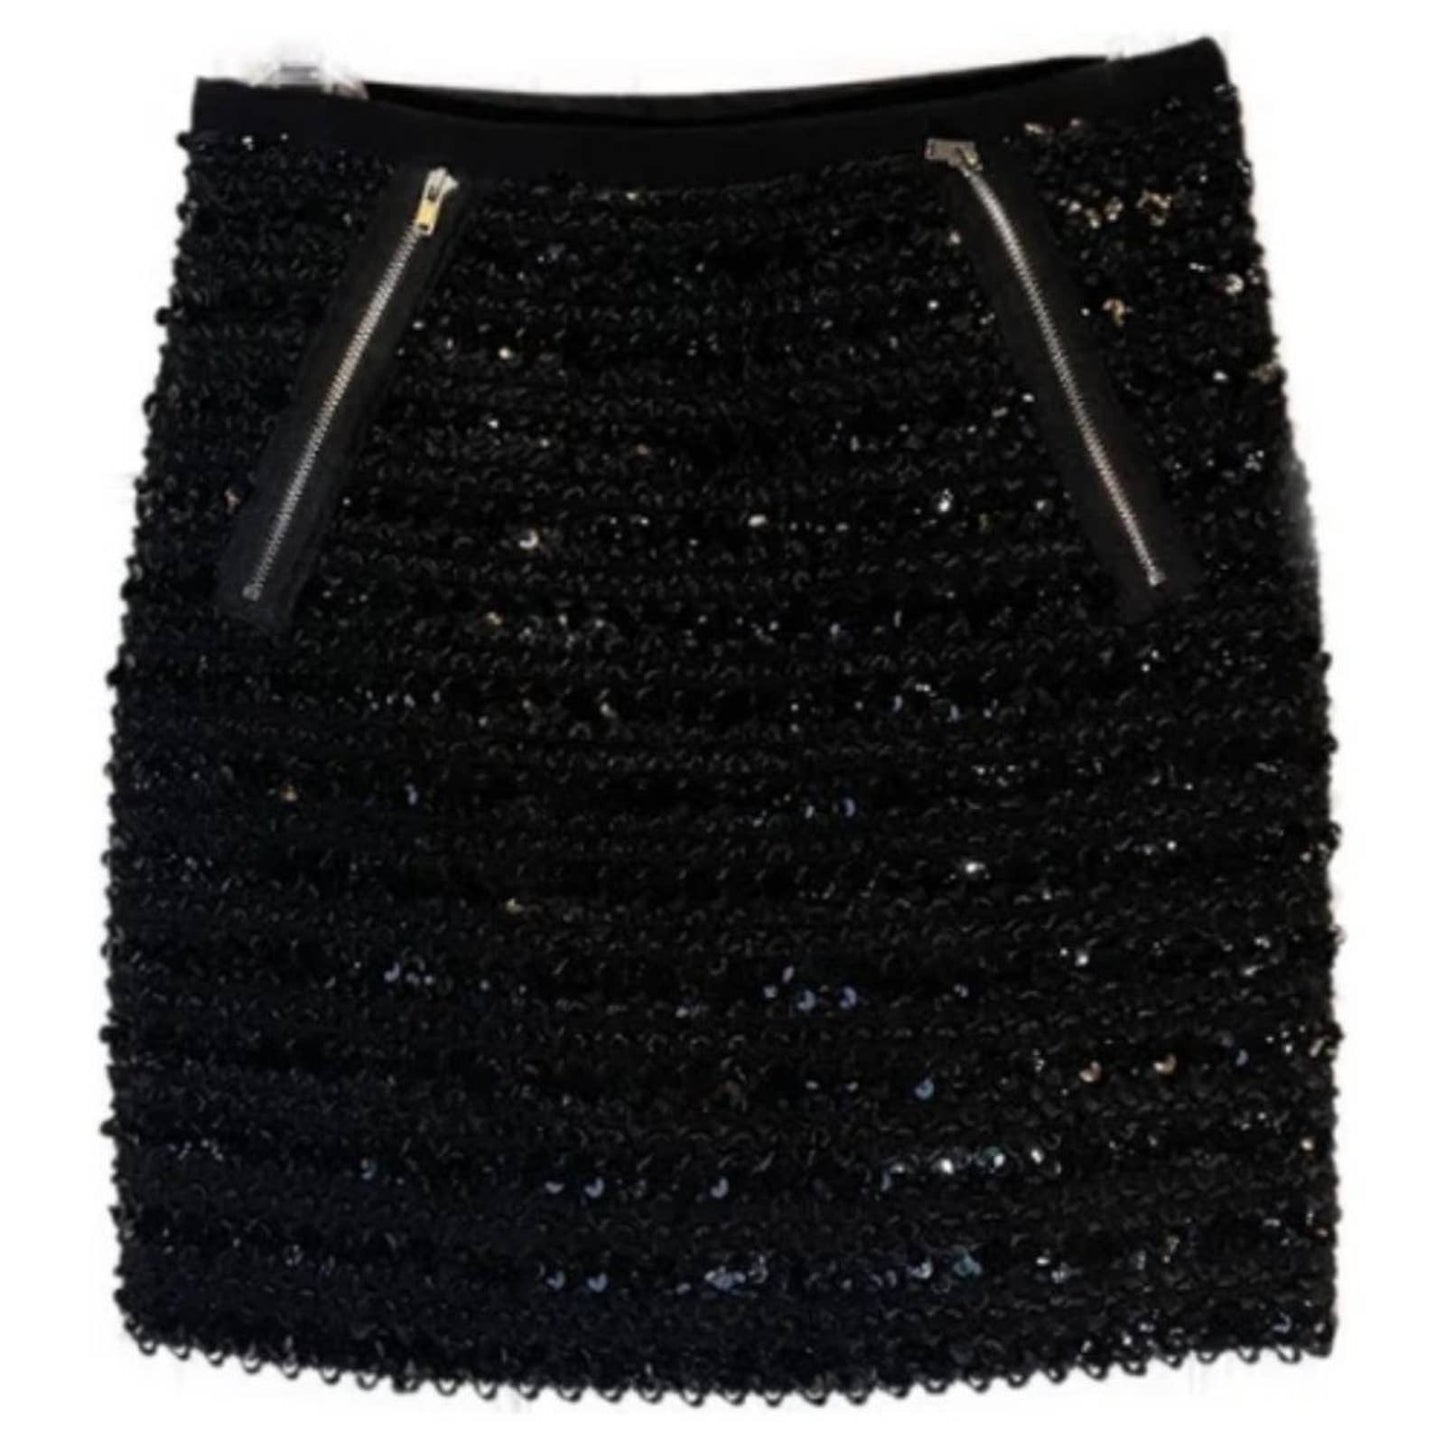 Sans Souci Brie Black Sequin Mini Skirt NWOT Size Medium